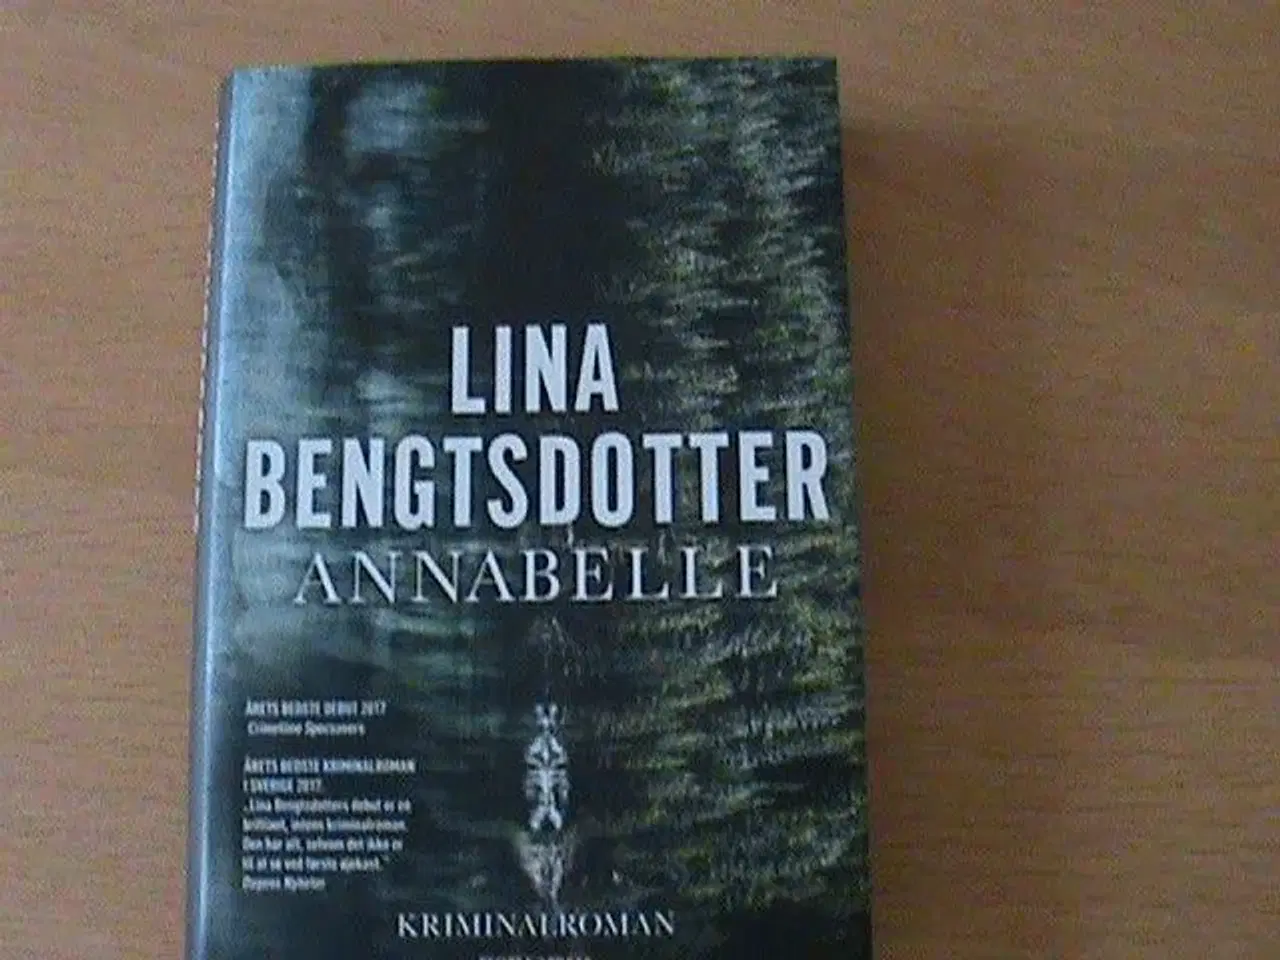 Billede 1 - Bog "Annabelle" af Lina Bengtsdotter